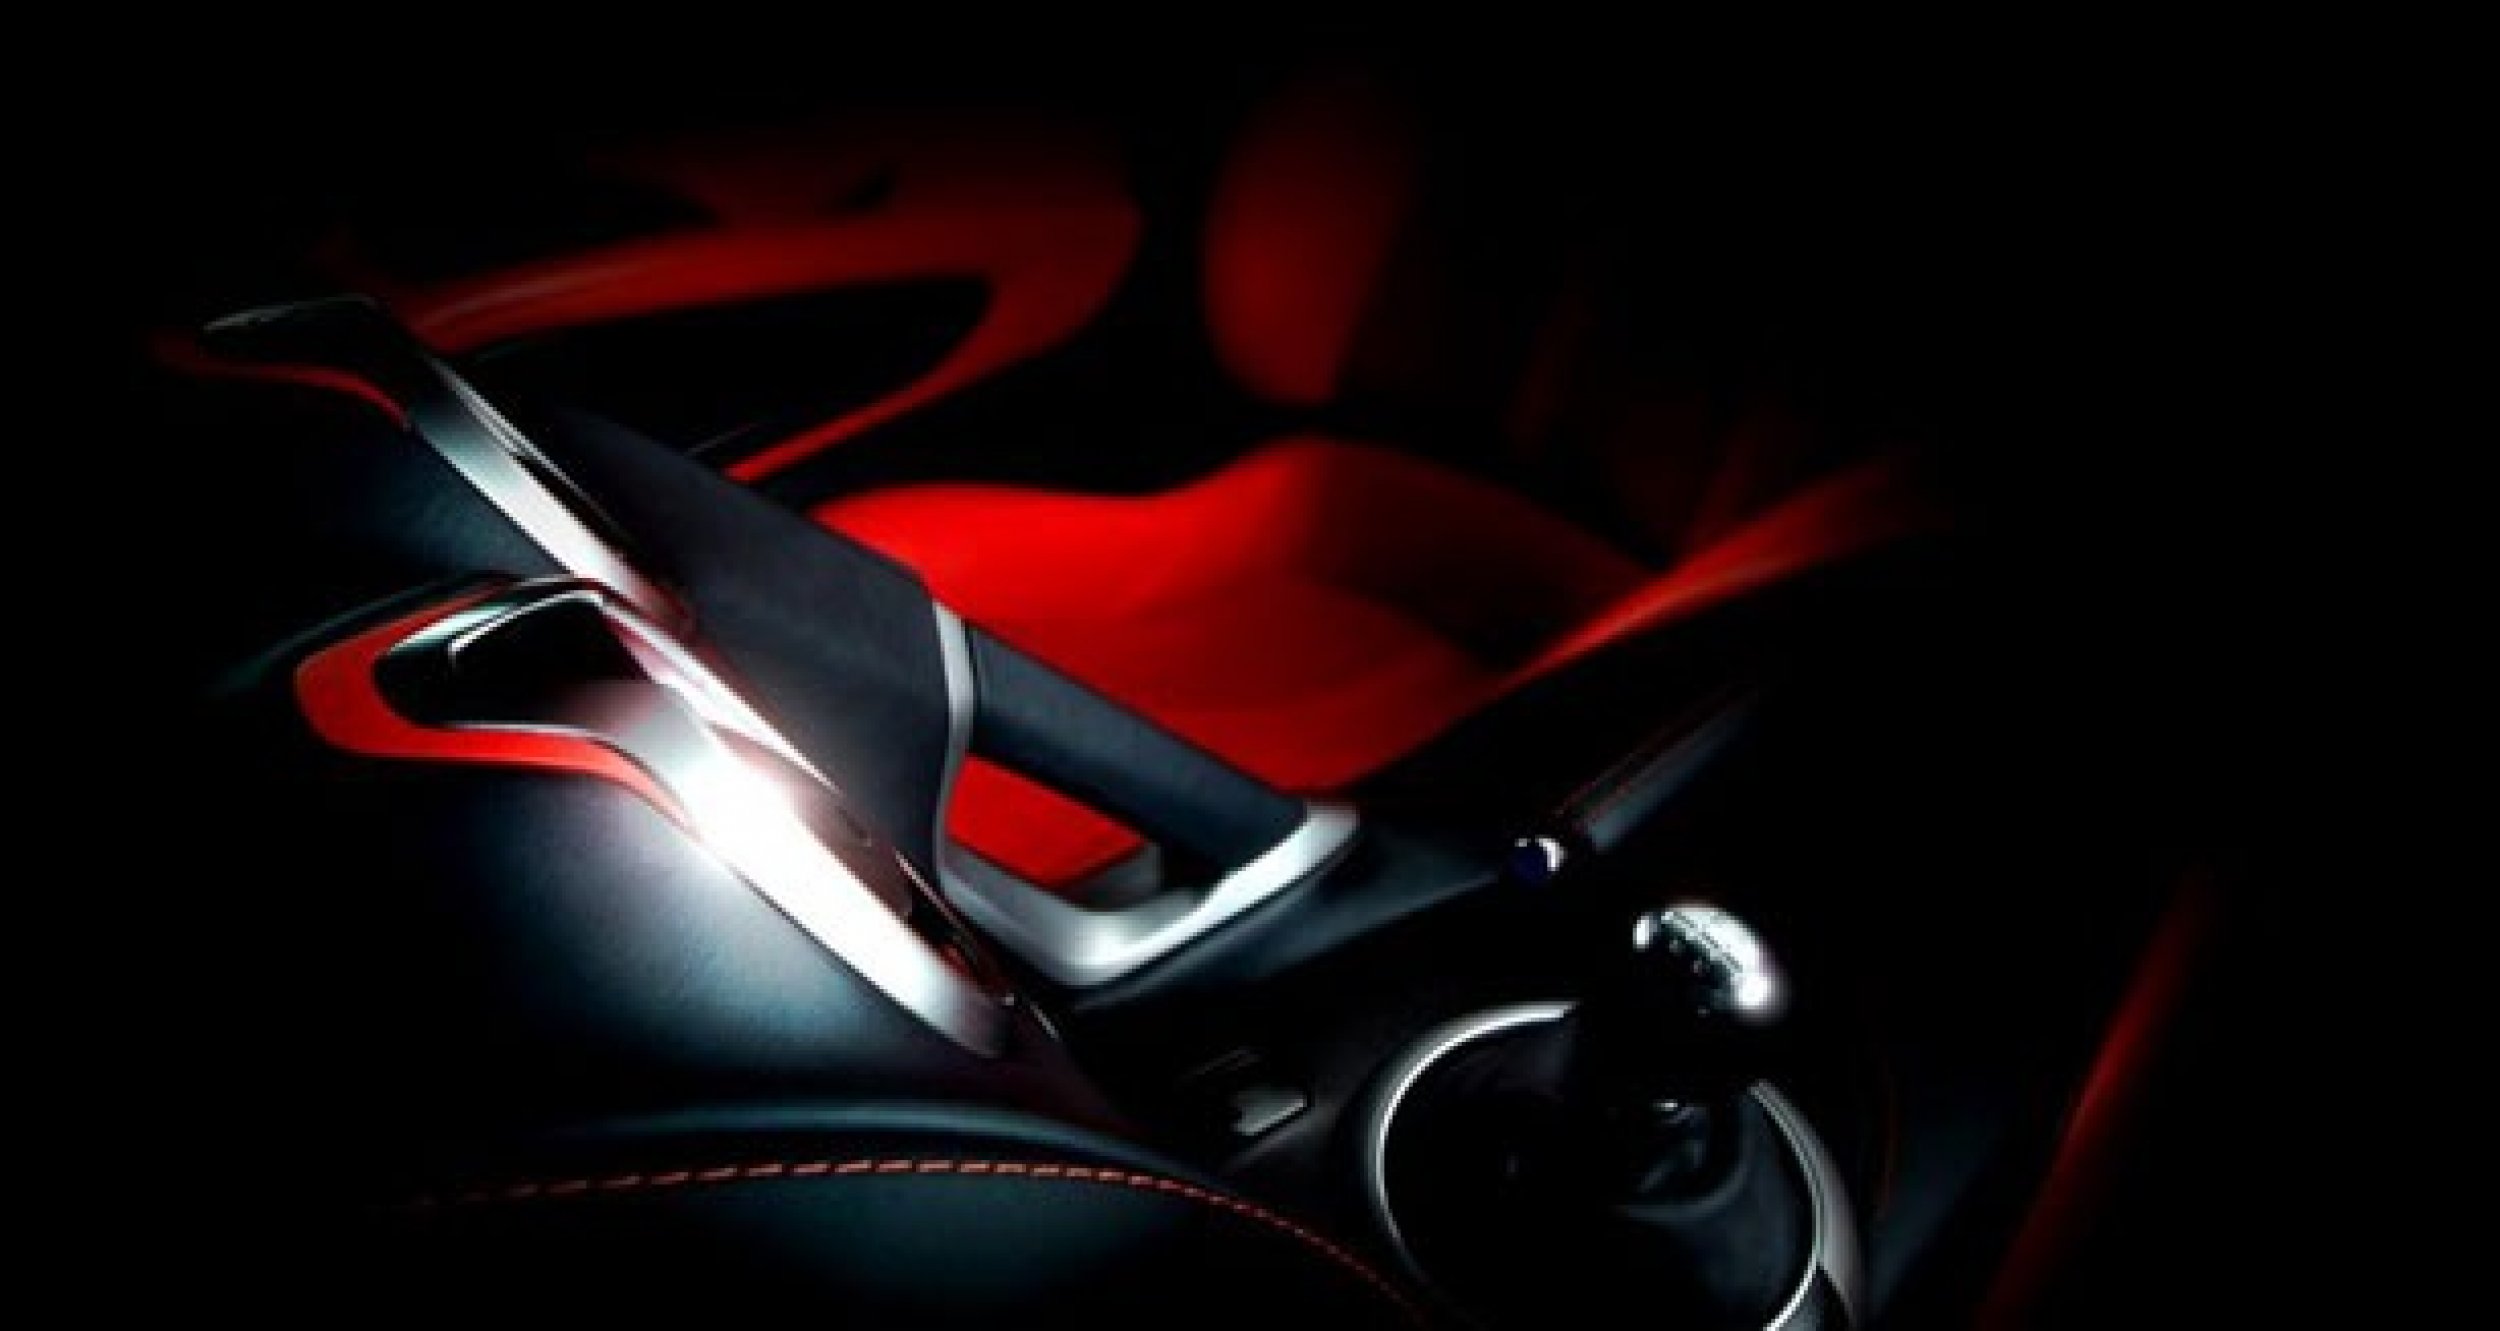 The 2013 SRT Viper teaser interior photo.